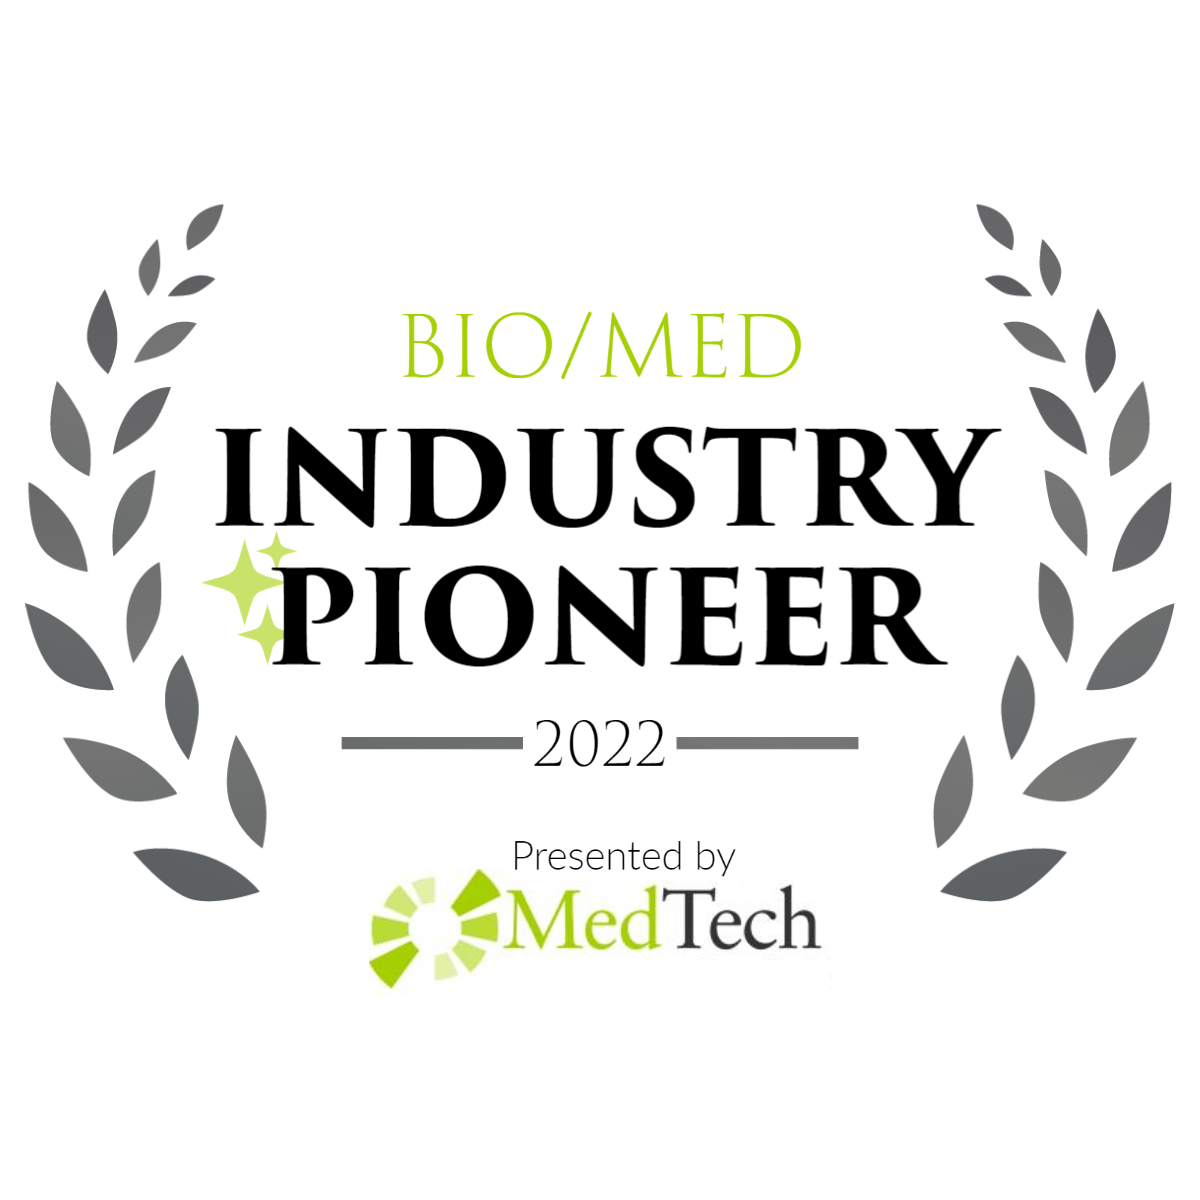 MedTech 2022 Bio/Med Industry Pioneer Award